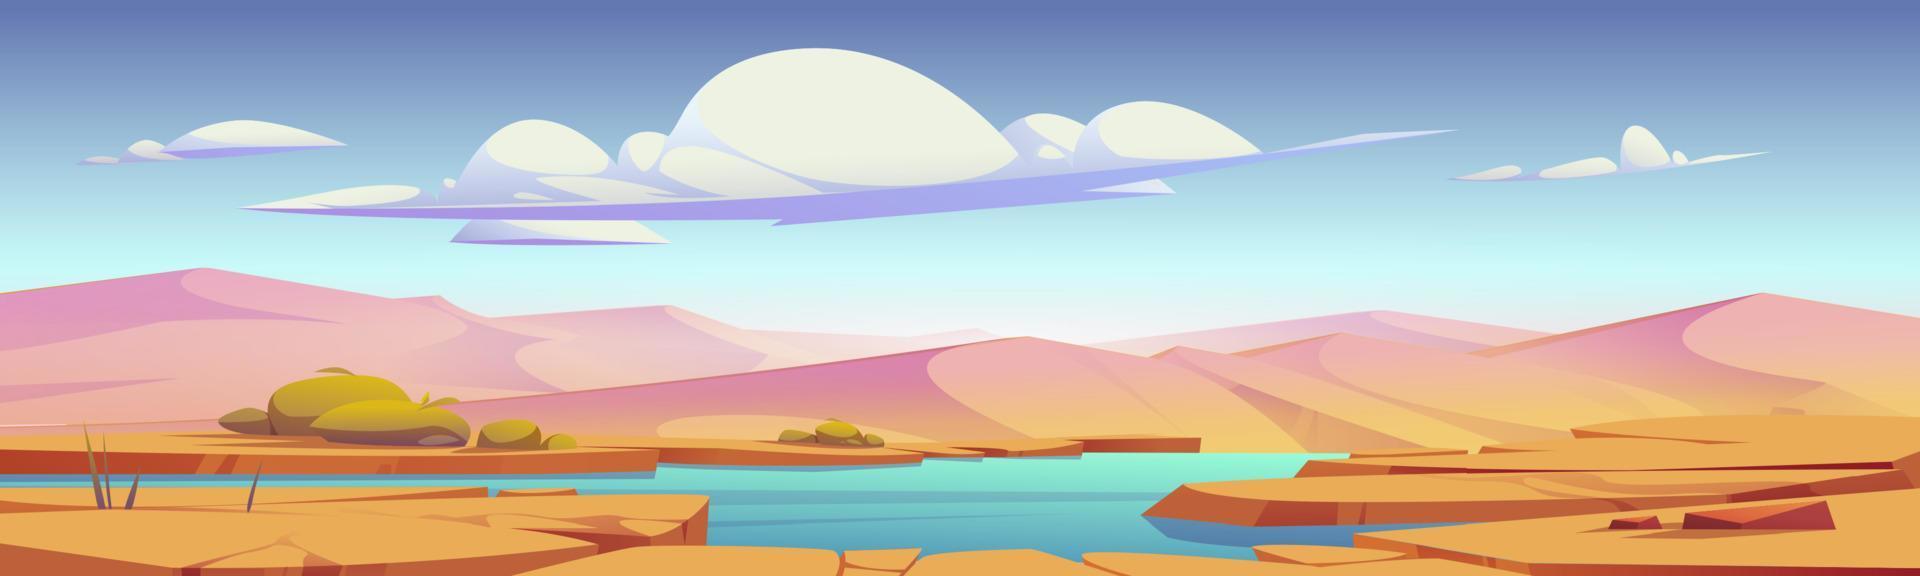 deserto paesaggio con oasi e sabbia dune vettore